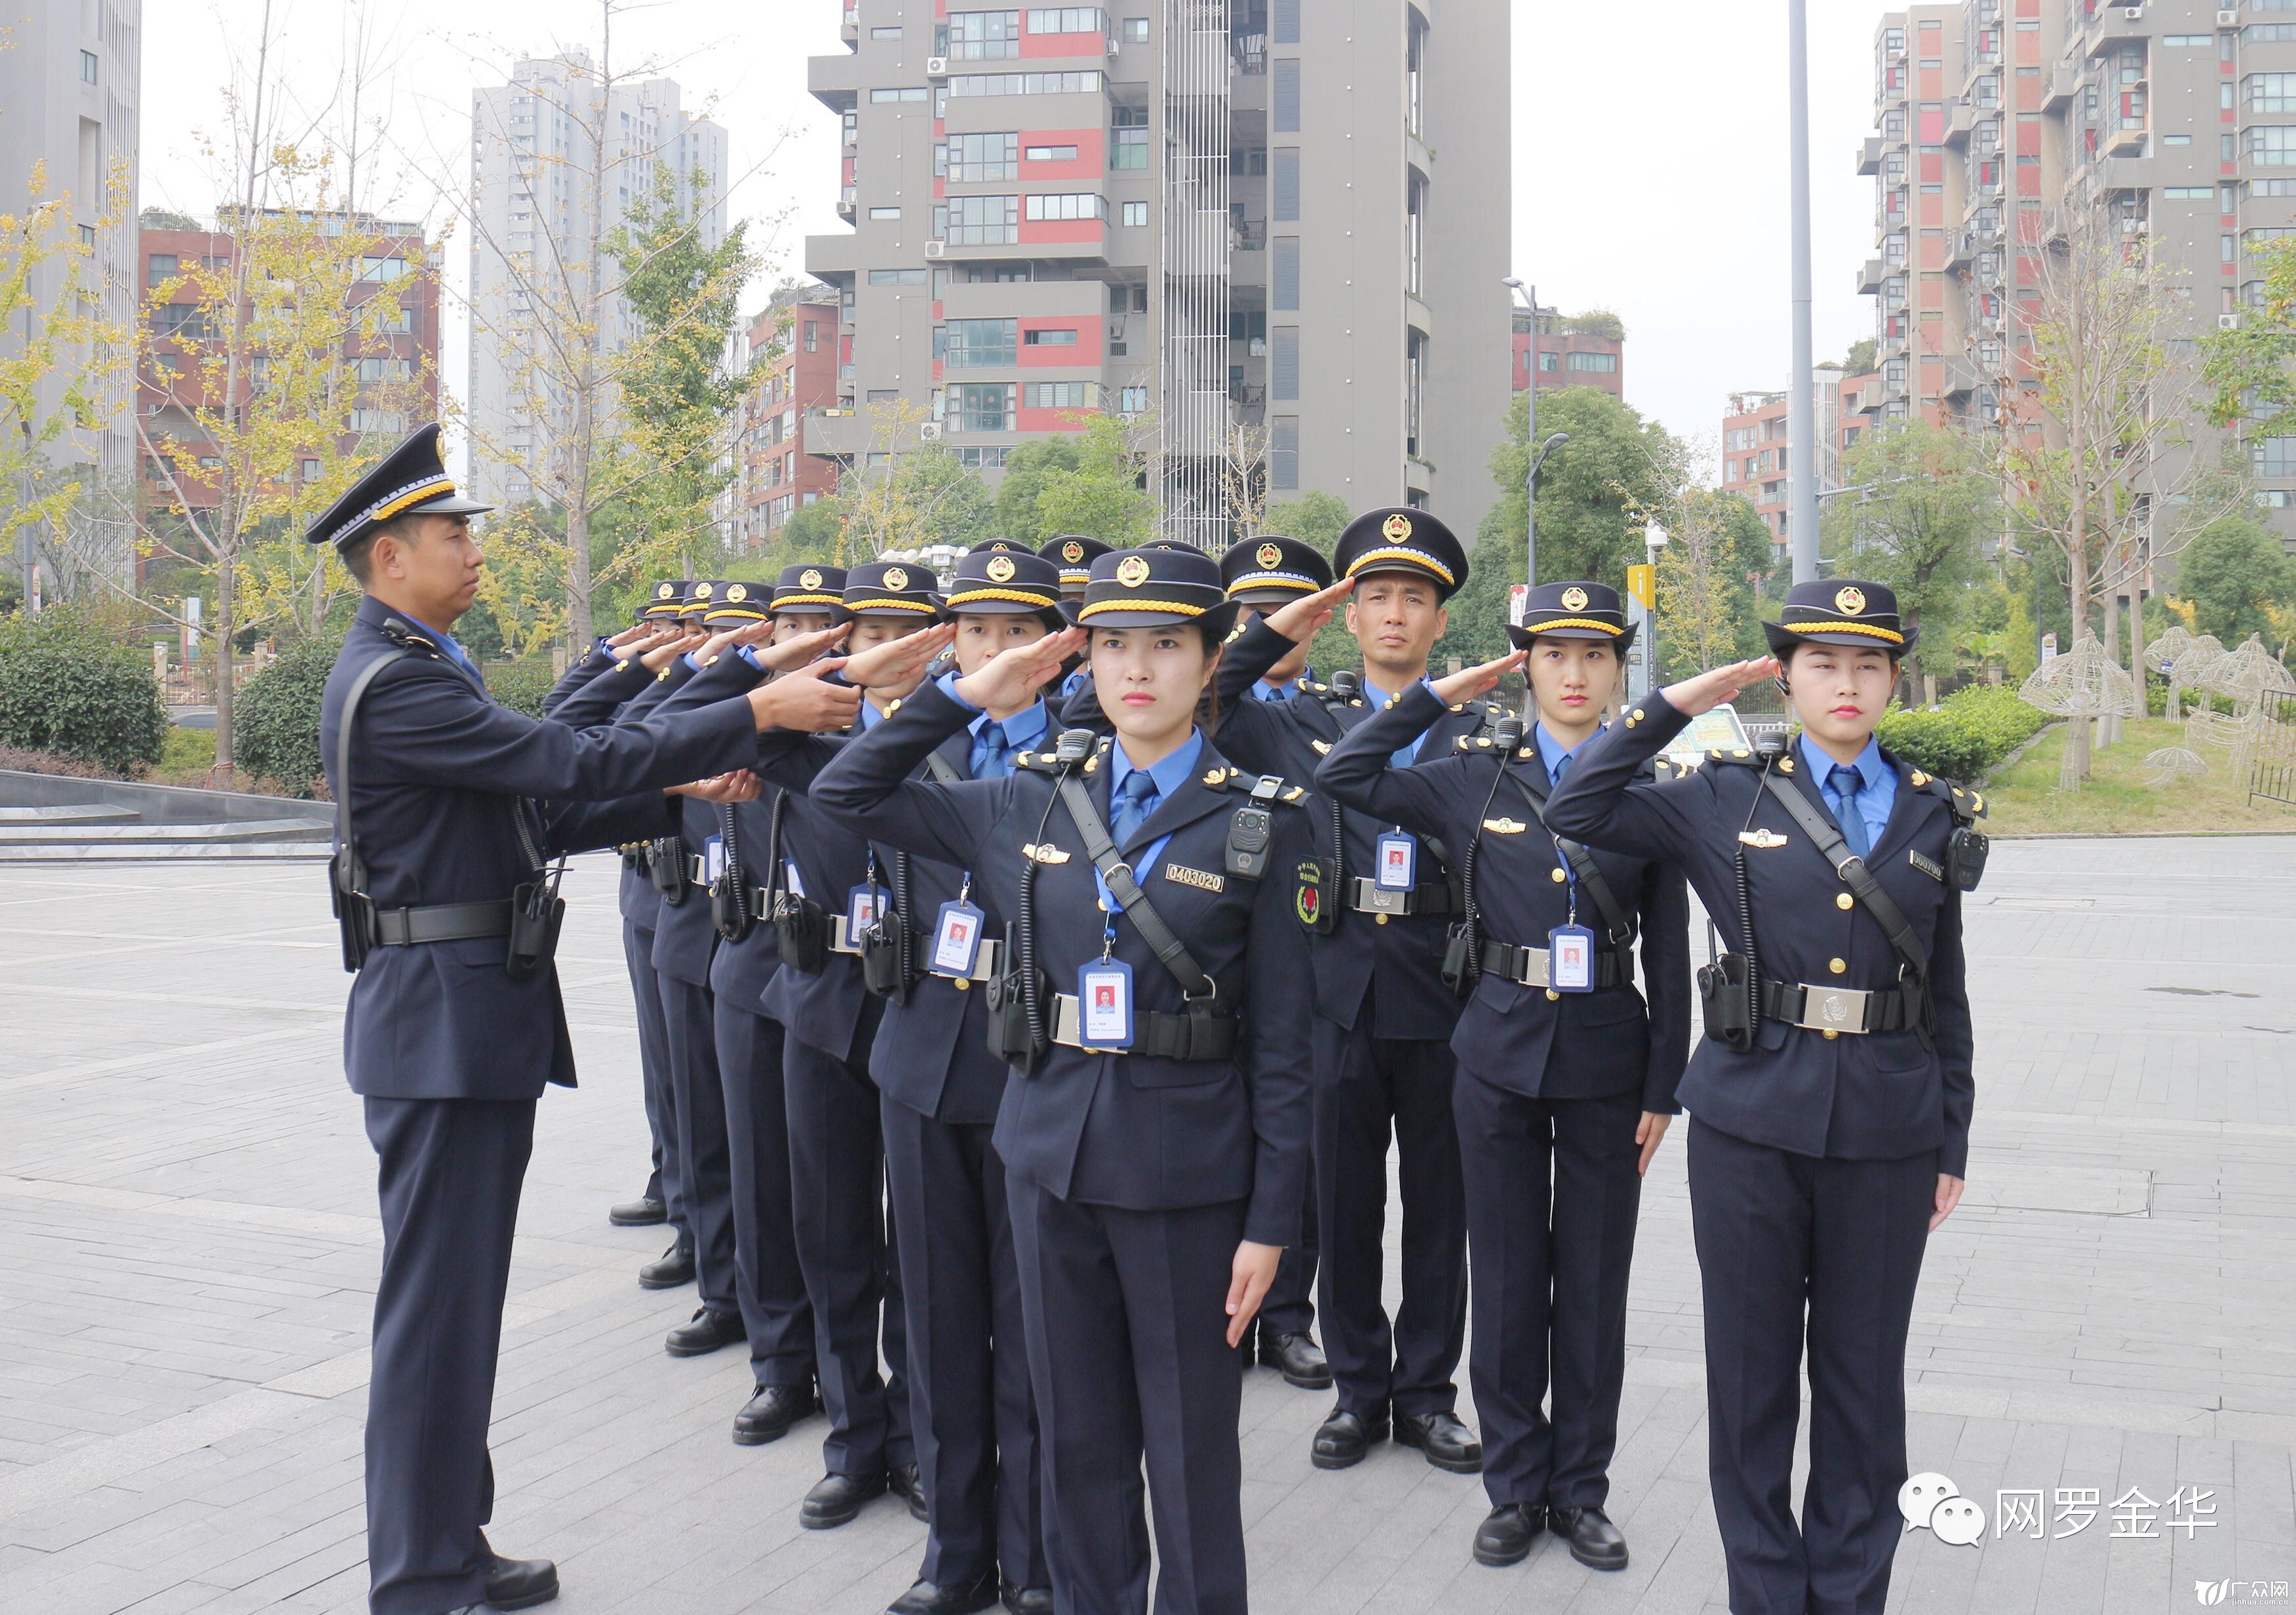 金东执法局巡查分队着新式制服亮相街头